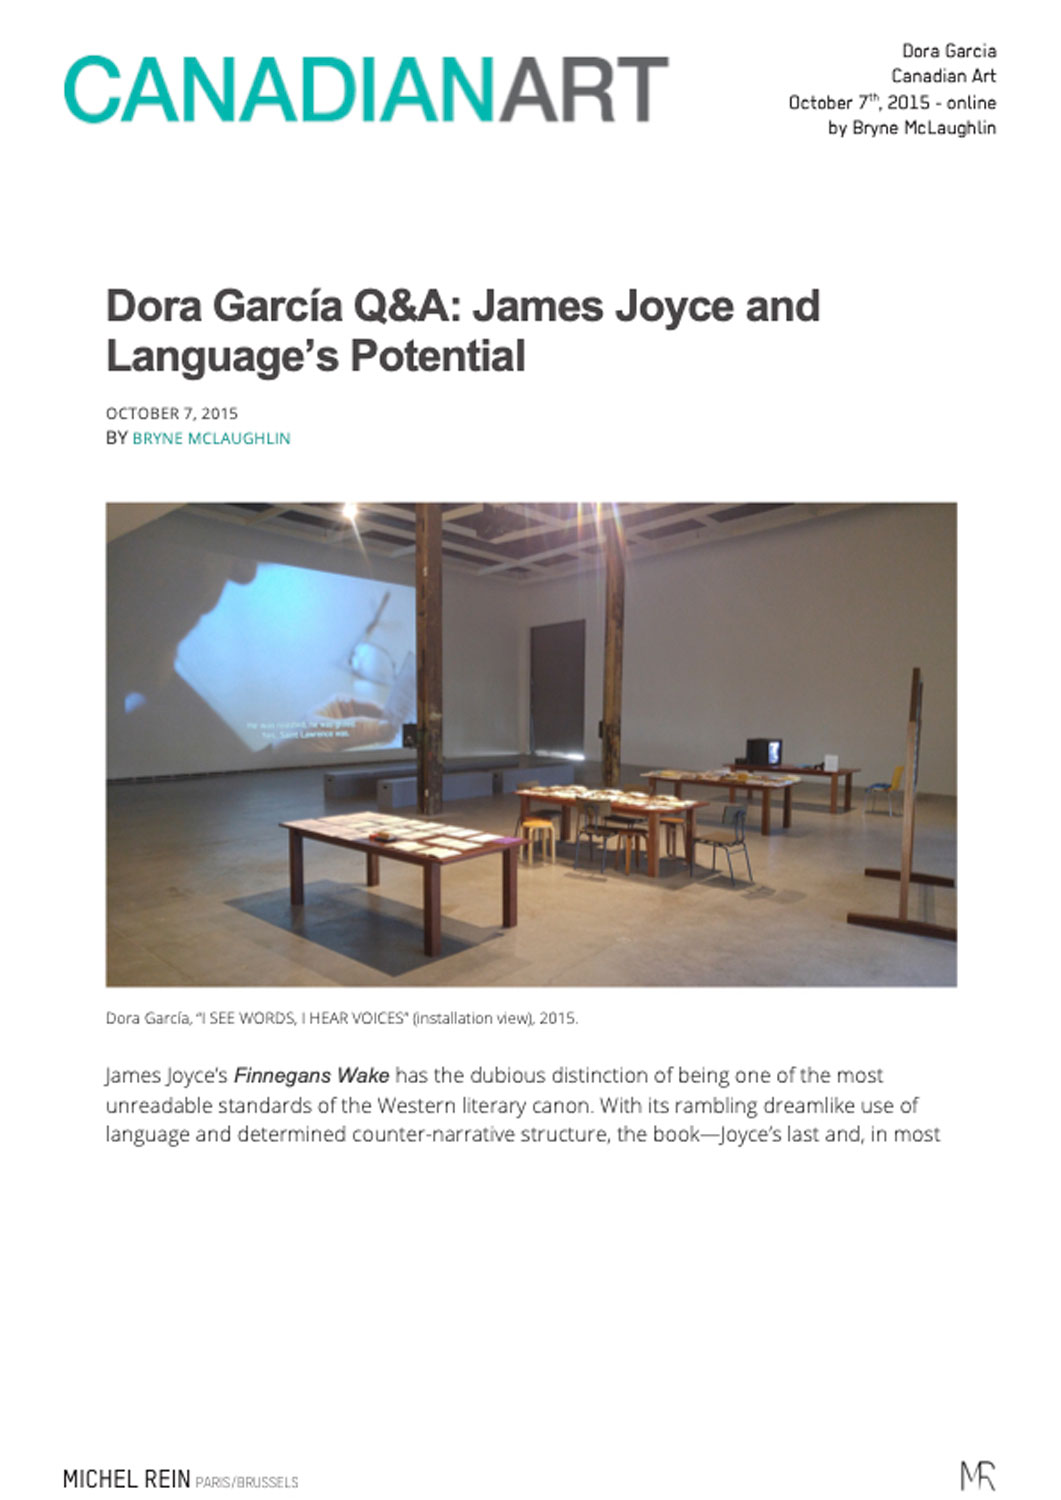 Dora Garcia Q&A - Canadian Art